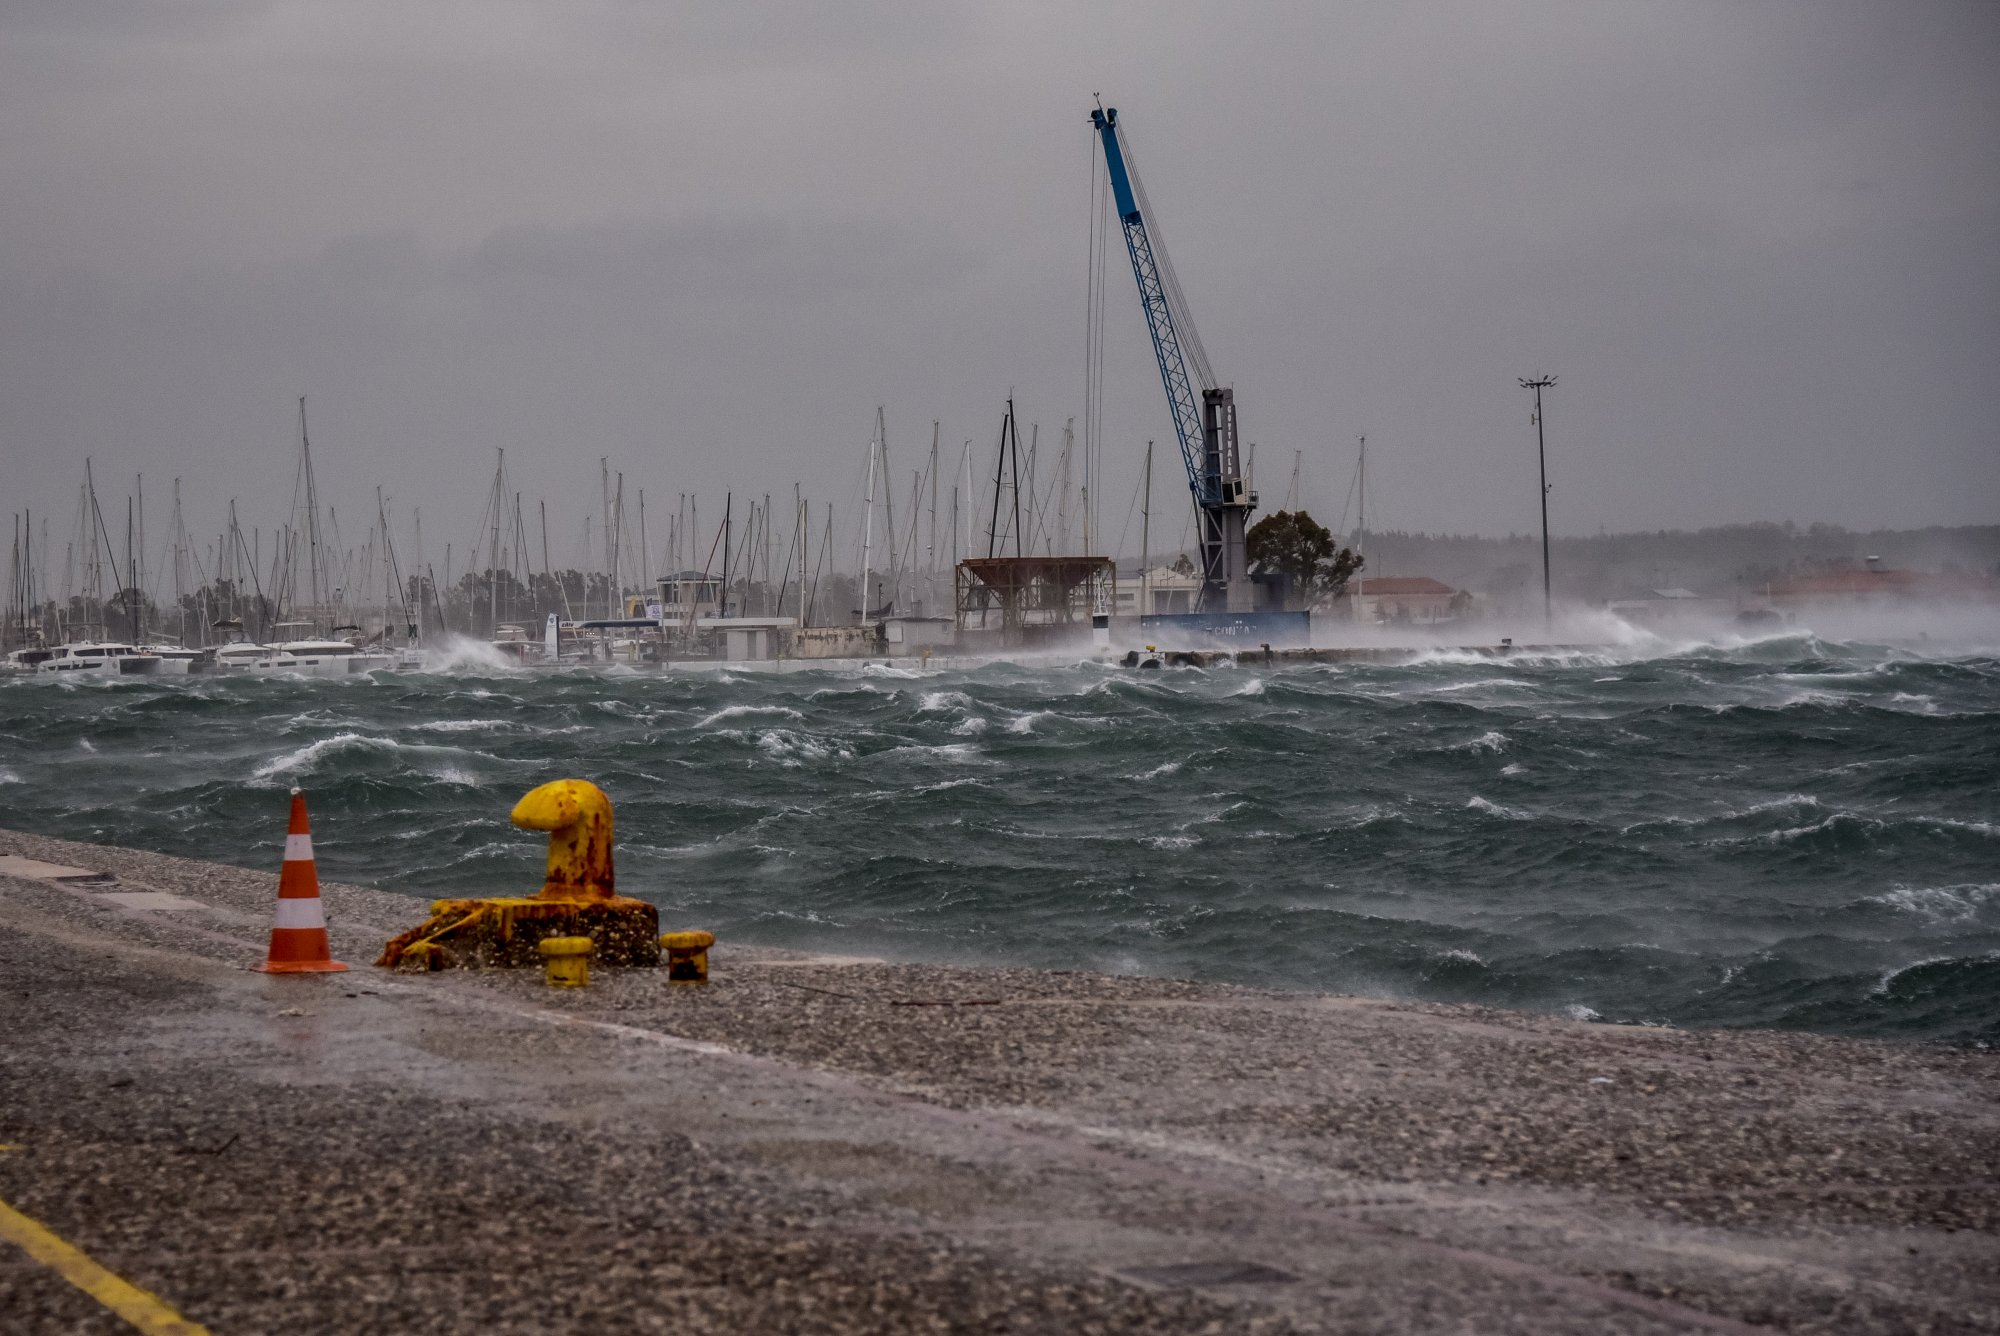 Κακοκαιρία: Οι θυελλώδεις άνεμοι καθηλώνουν τα πλοία στα λιμάνια - Τι ισχύει